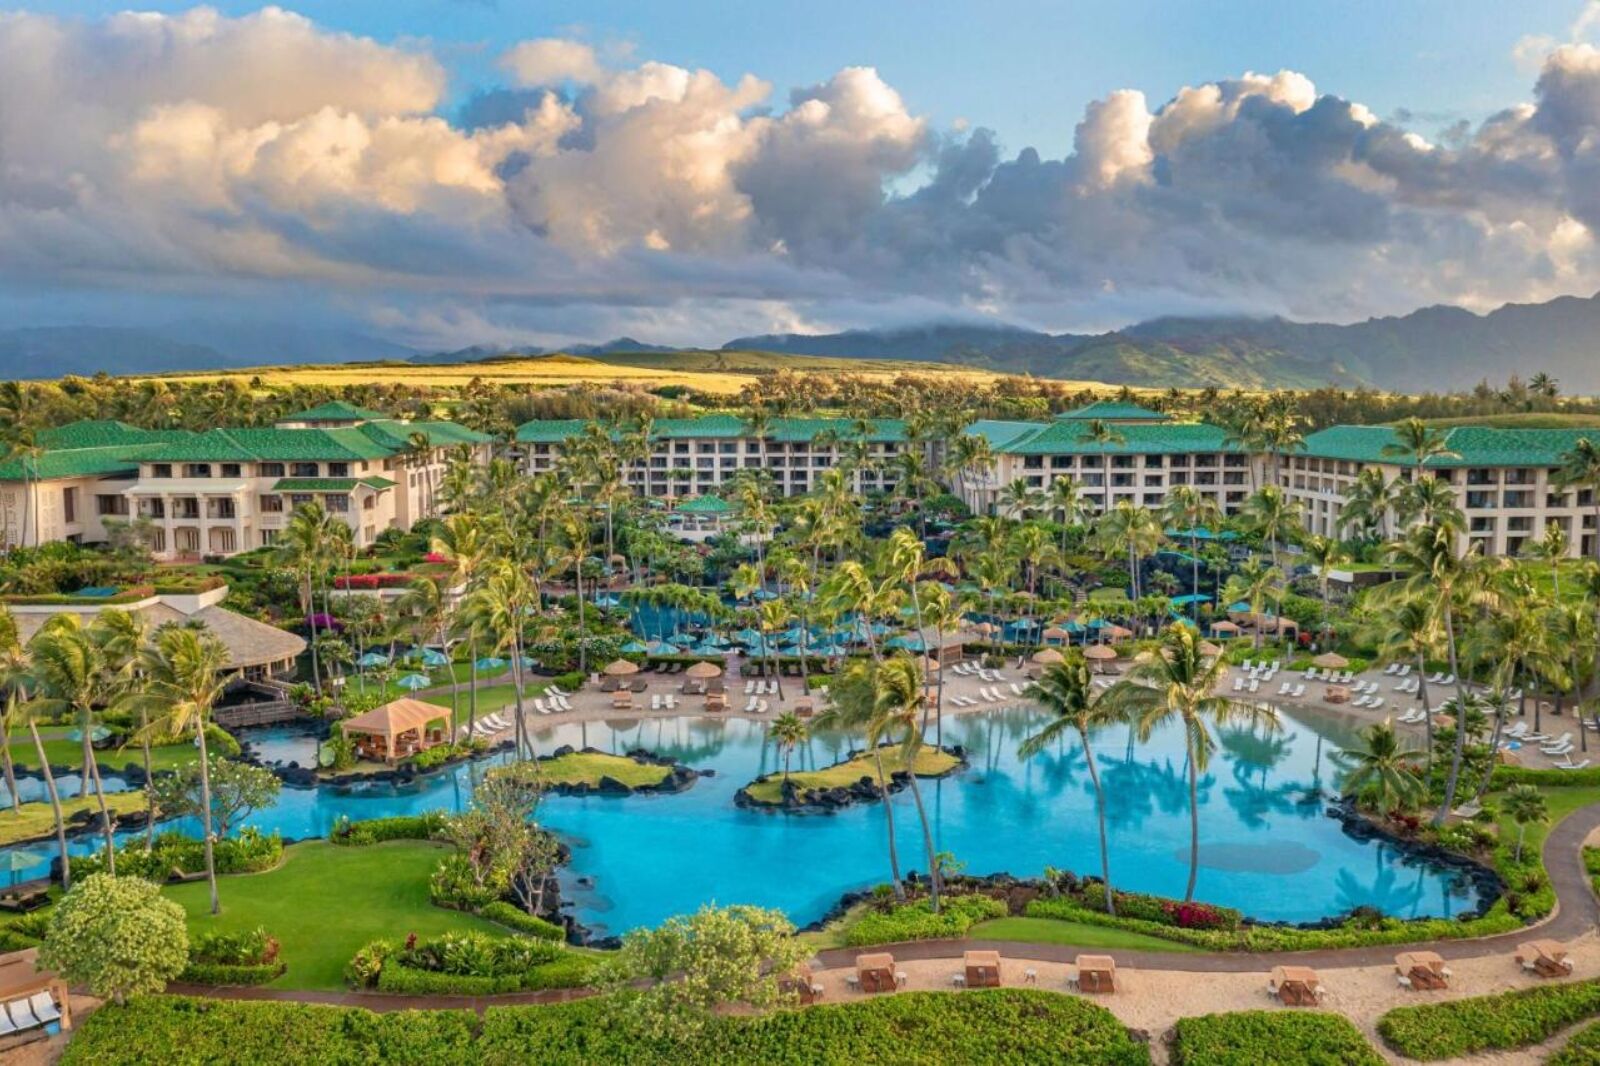 Grand Hyatt Kauai Resort & Spa one of the best Hawaii resorts